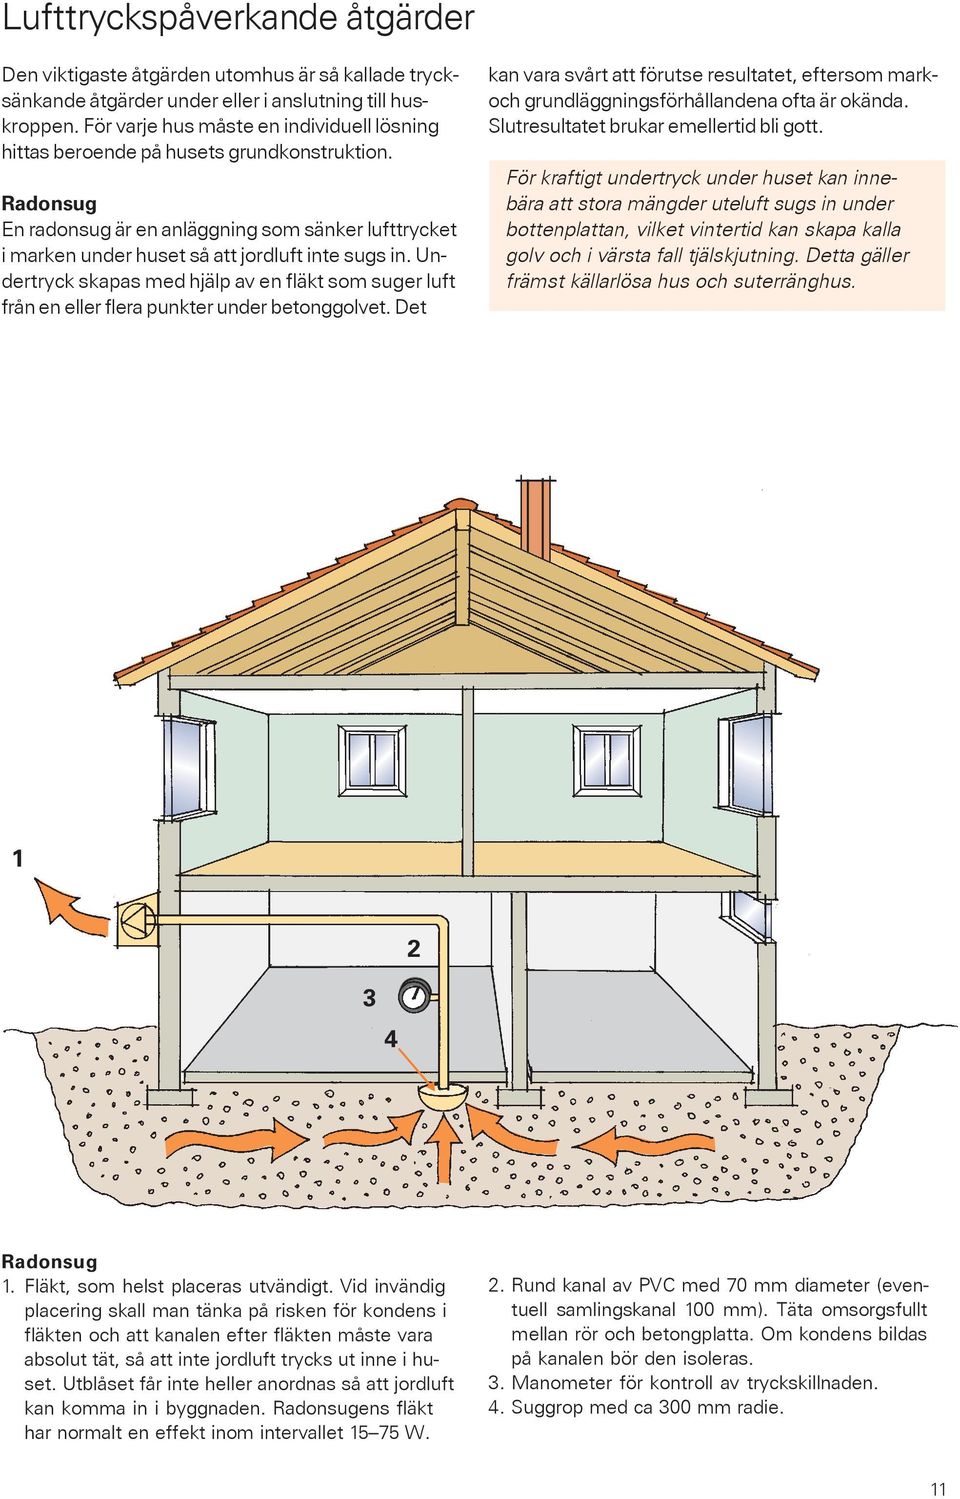 Åtgärder mot radon i bostäder - PDF Free Download